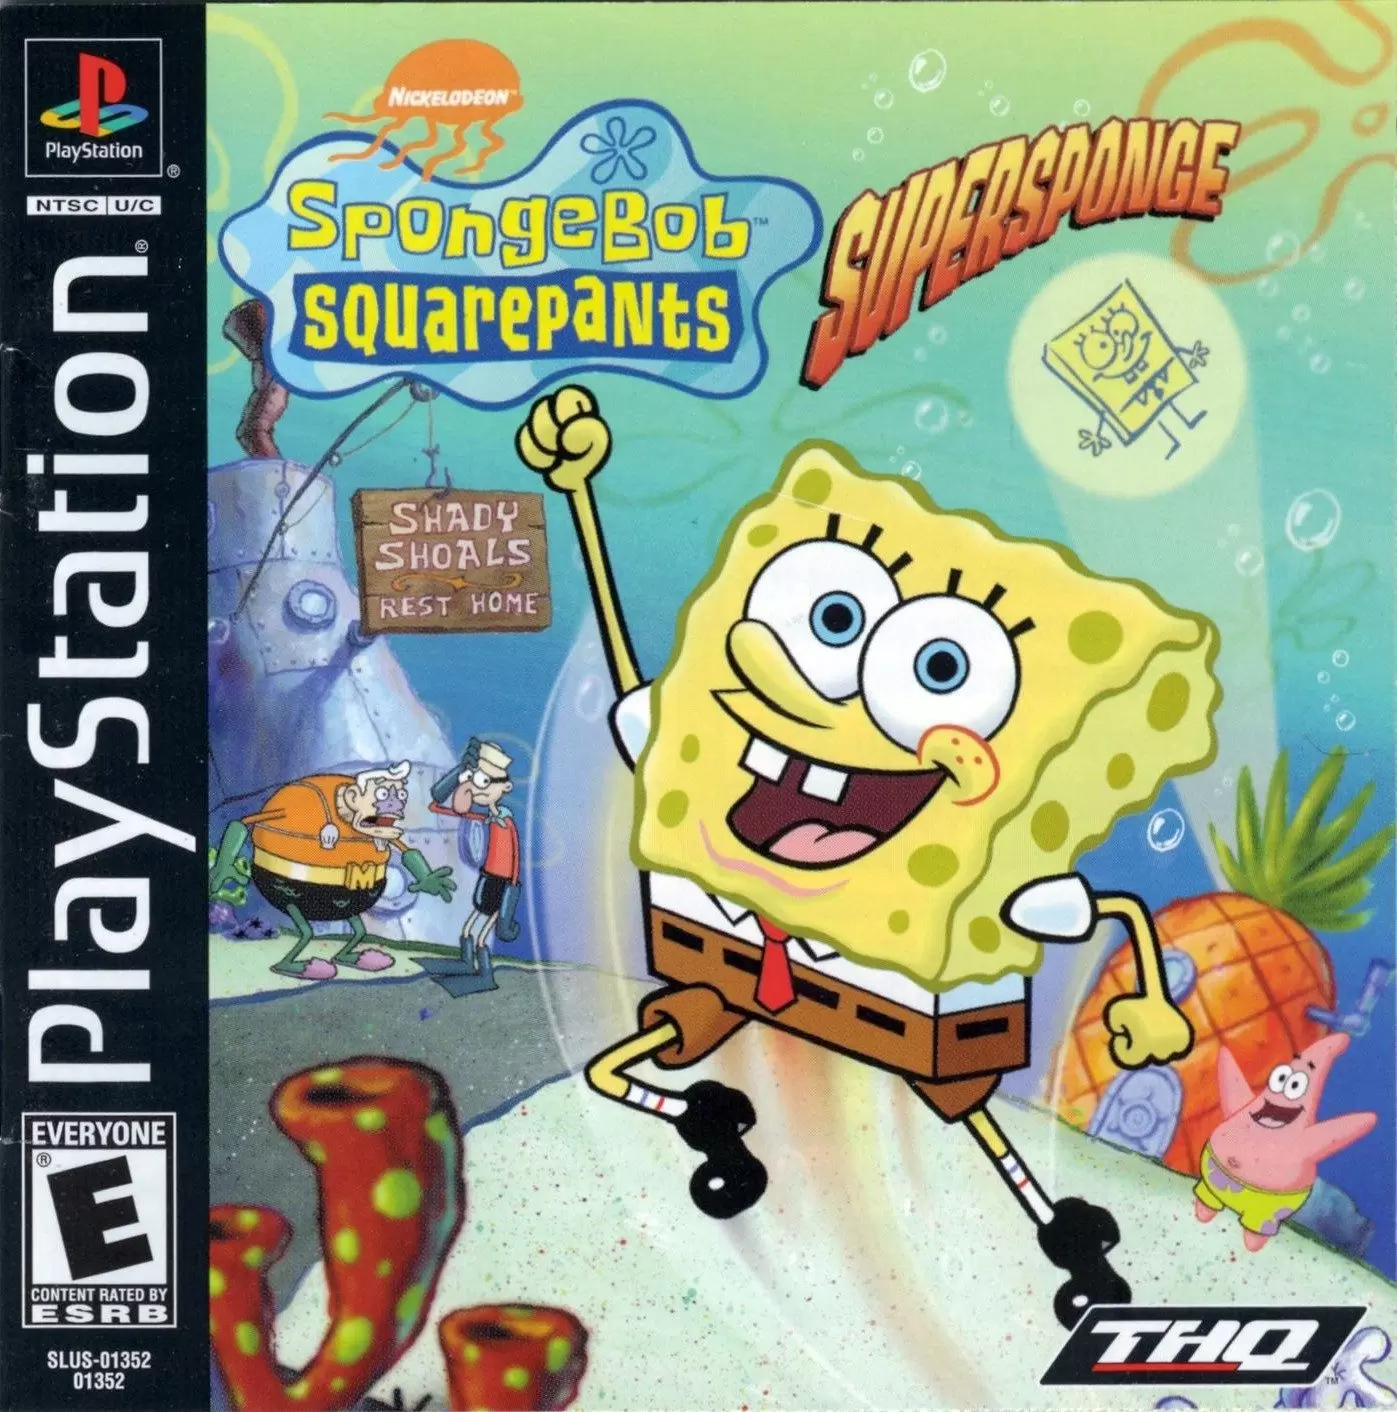 Playstation games - SpongeBob SquarePants: SuperSponge